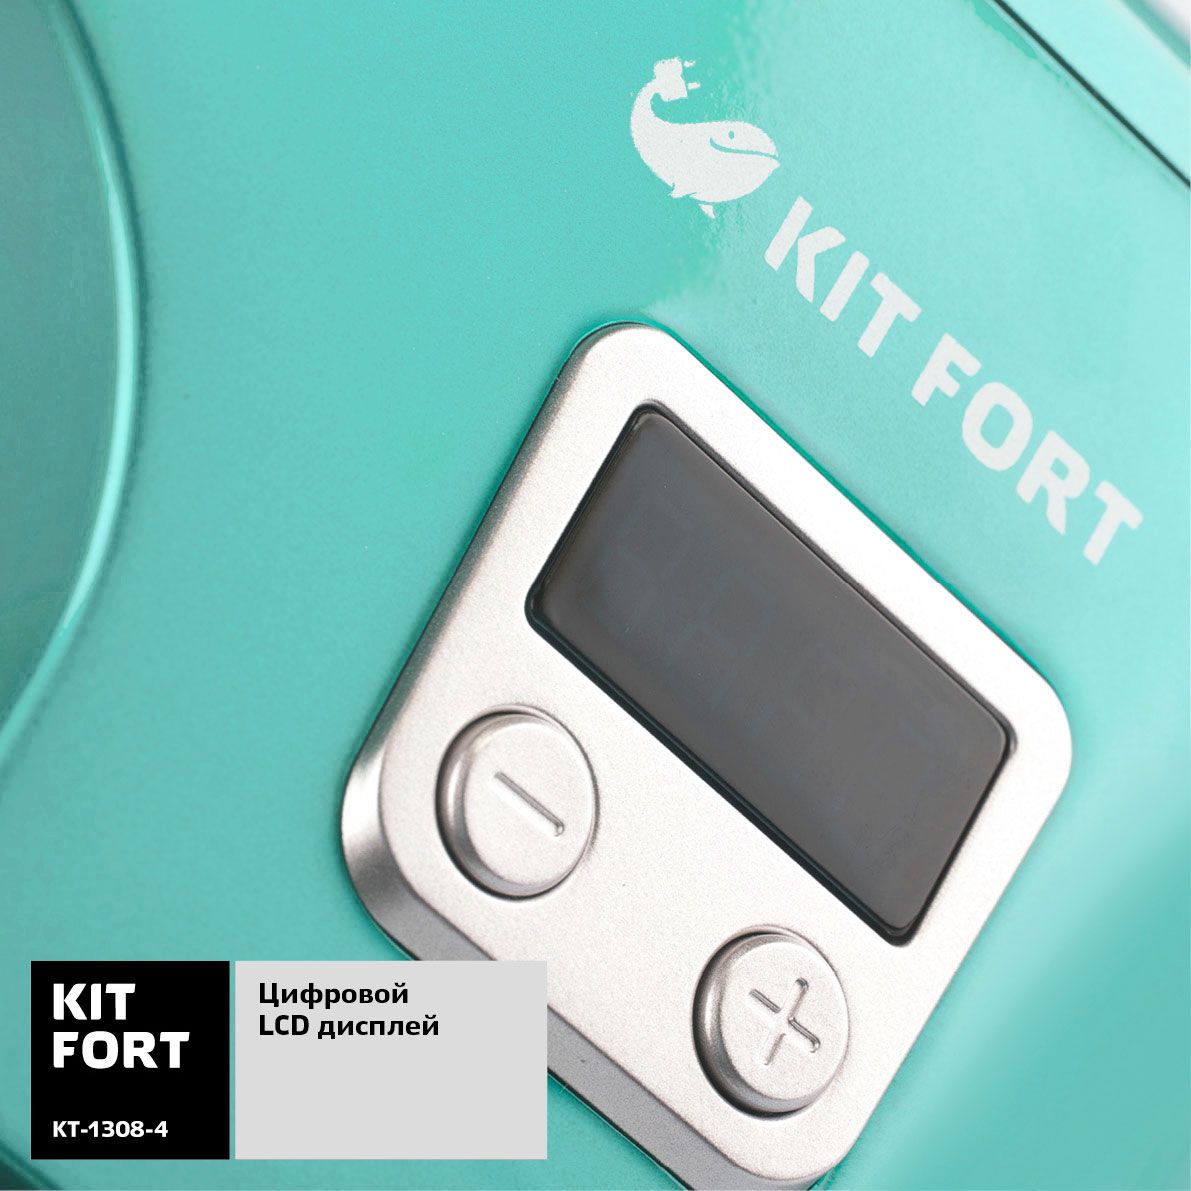  Kitfort -1308-4, Turquoise 